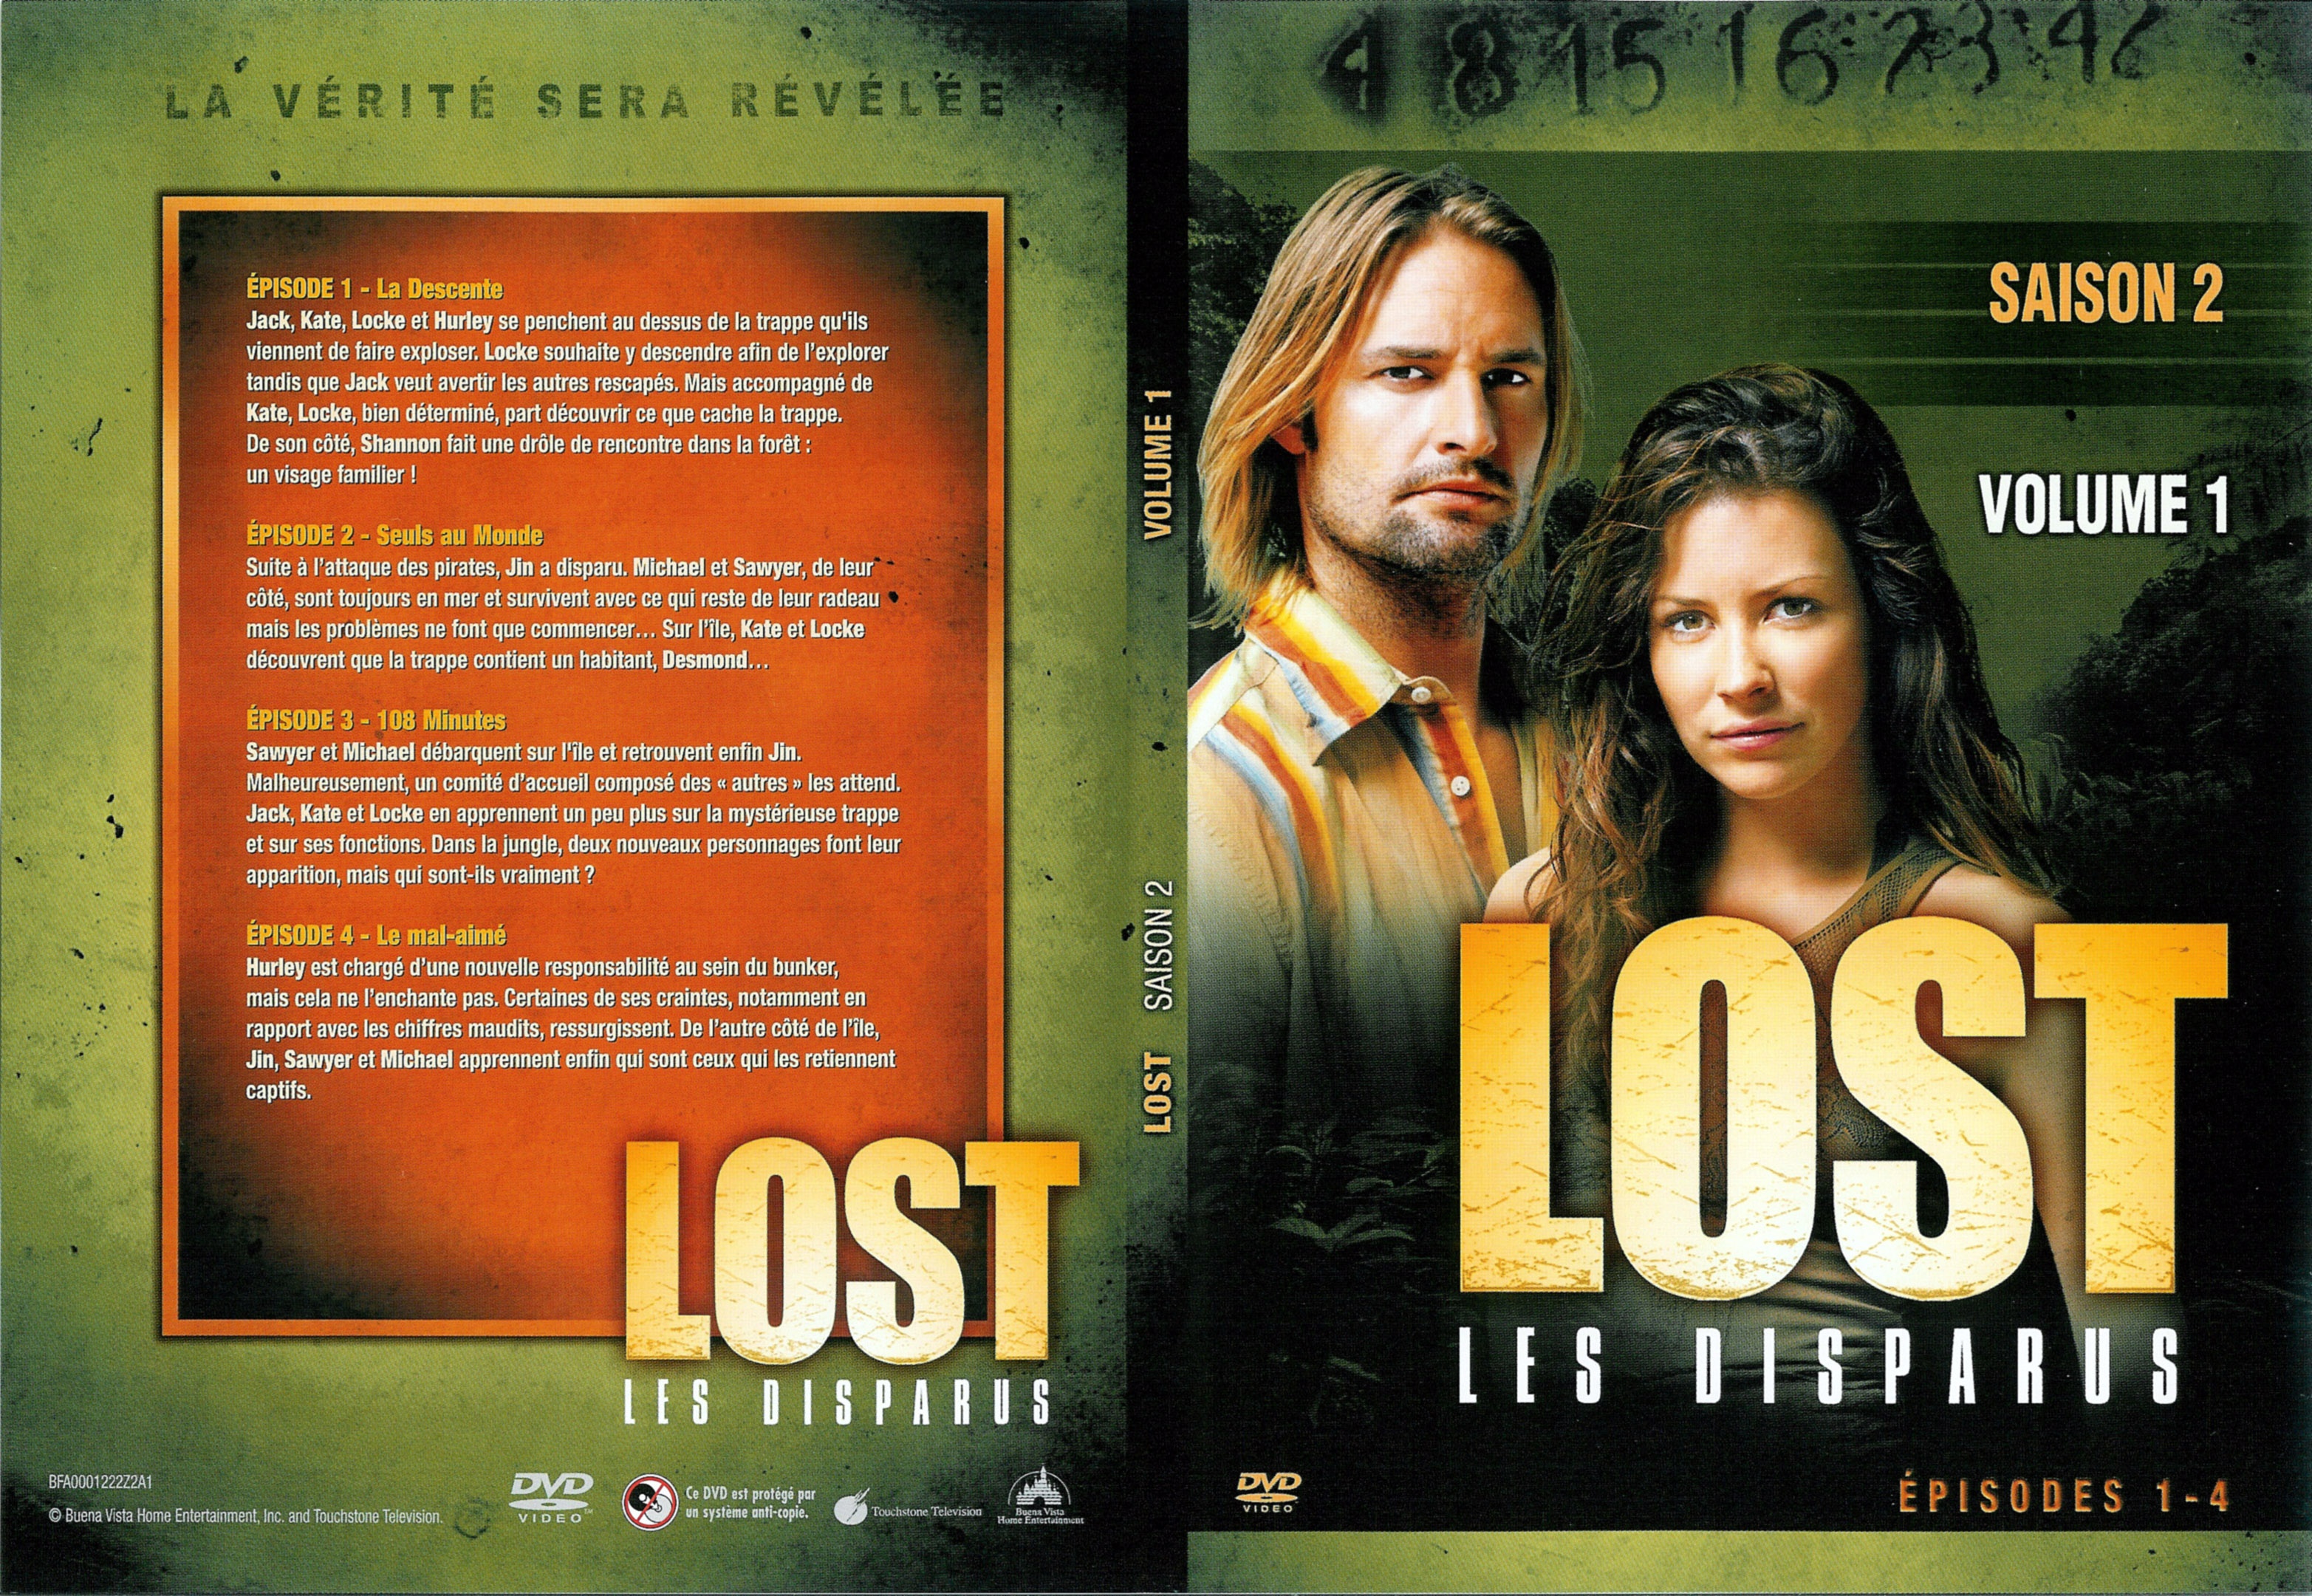 Jaquette DVD Lost Saison 2 DVD 1